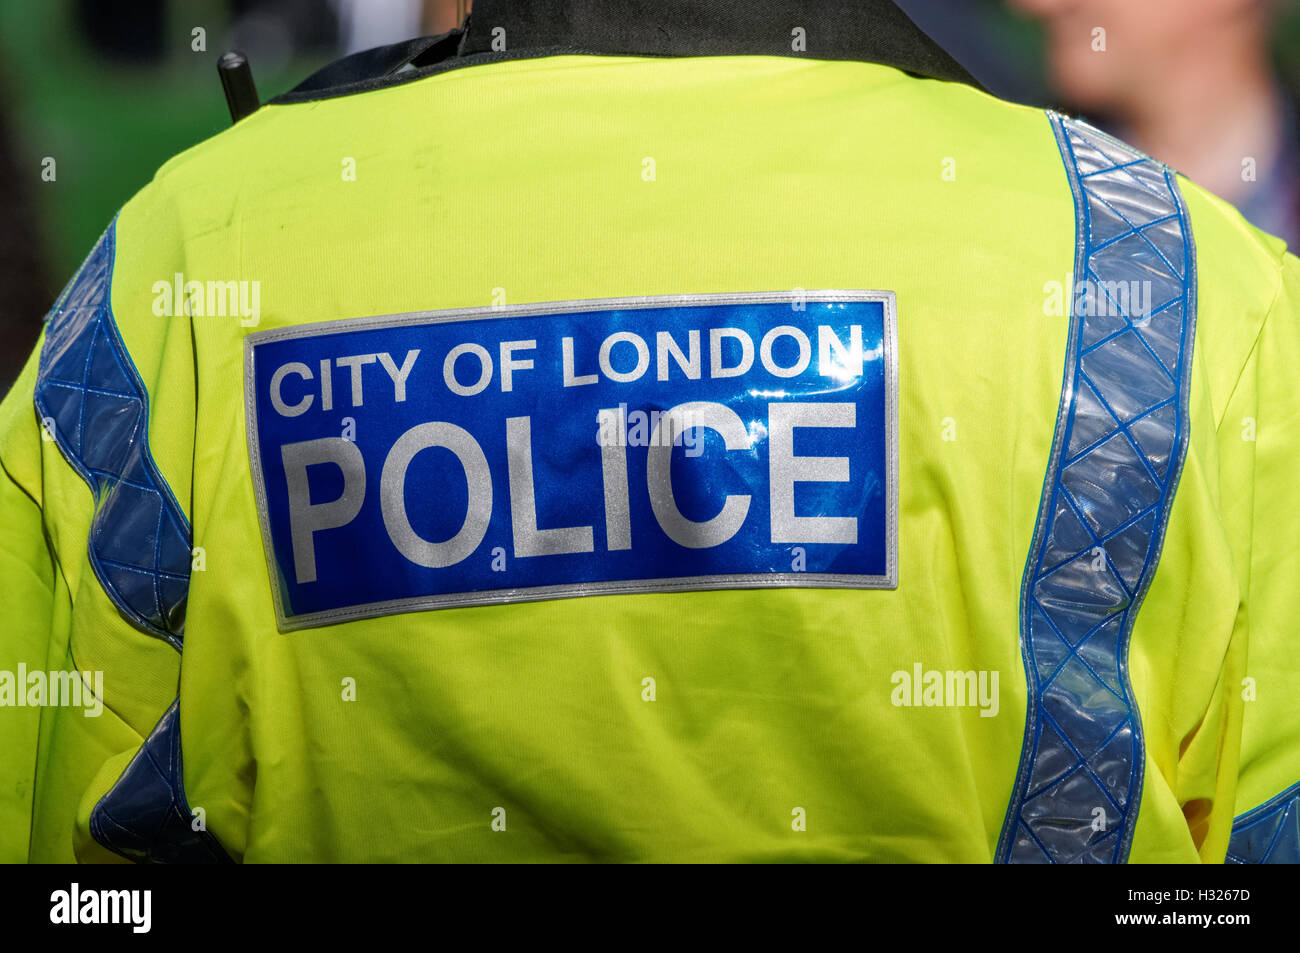 Ville de London agent de police, Londres Angleterre Royaume-Uni UK Banque D'Images